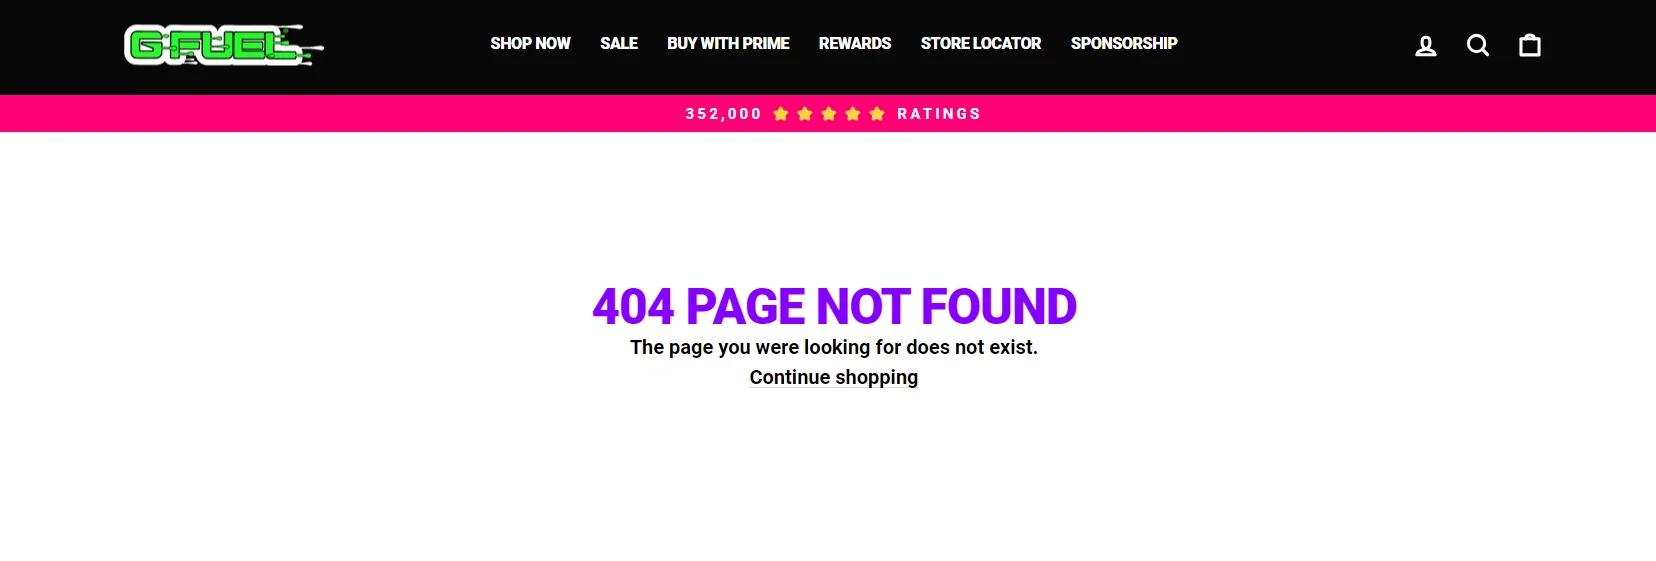 En fejlmeddelelse på G-Fuel-webstedet lyder "404 PAGE NOT FOUND Den side, du ledte efter, eksisterer ikke."